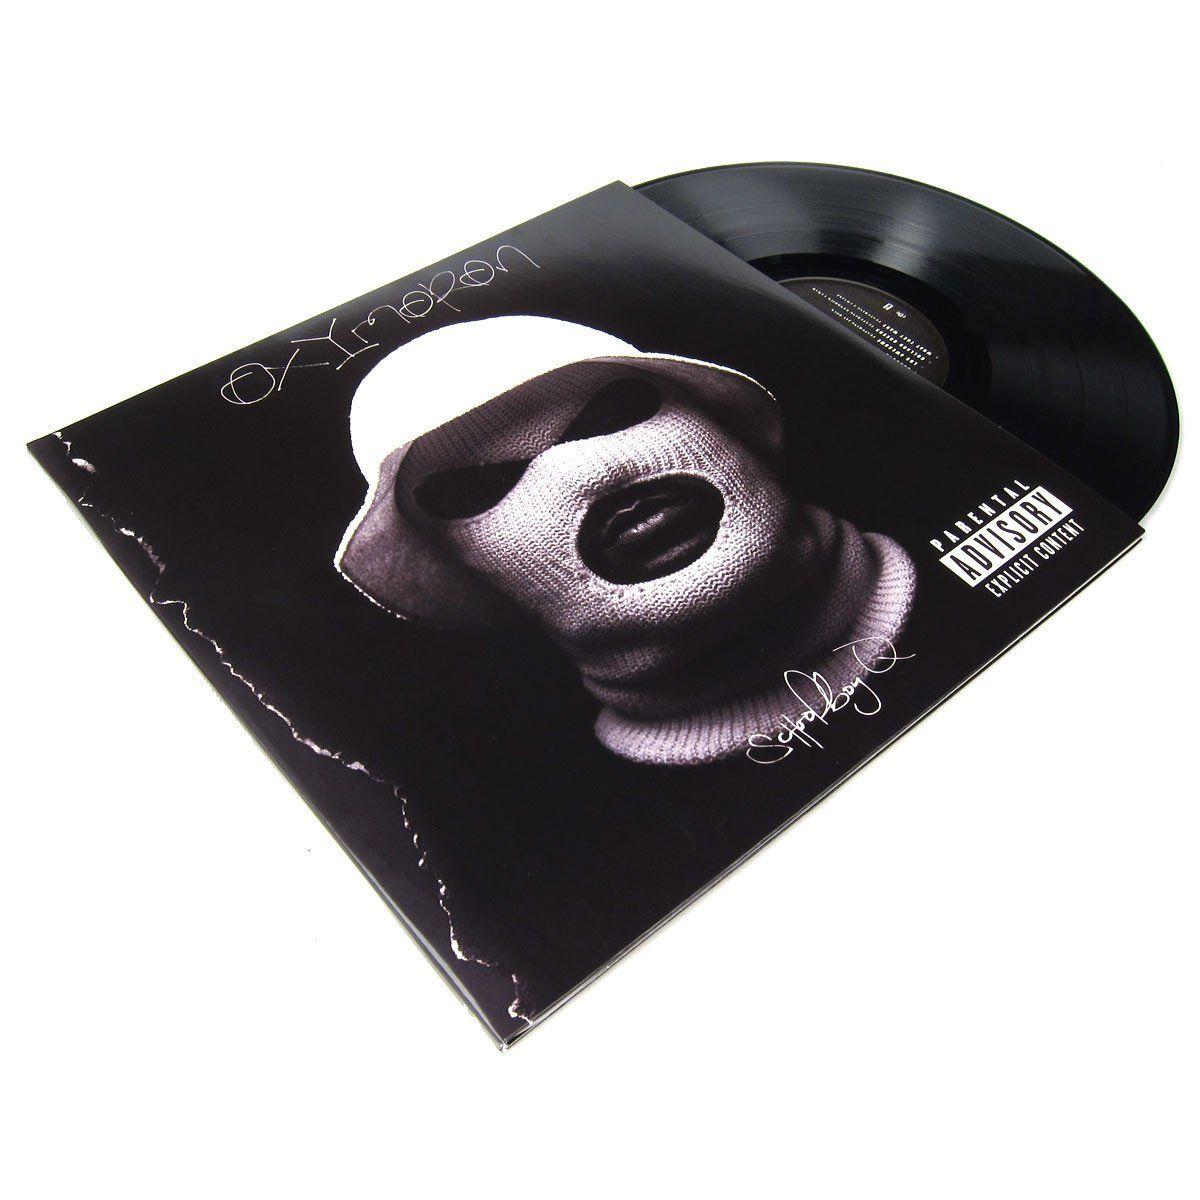 Schoolboy Q Logo - Schoolboy Q: Oxymoron Deluxe Edition Vinyl 2LP – TurntableLab.com